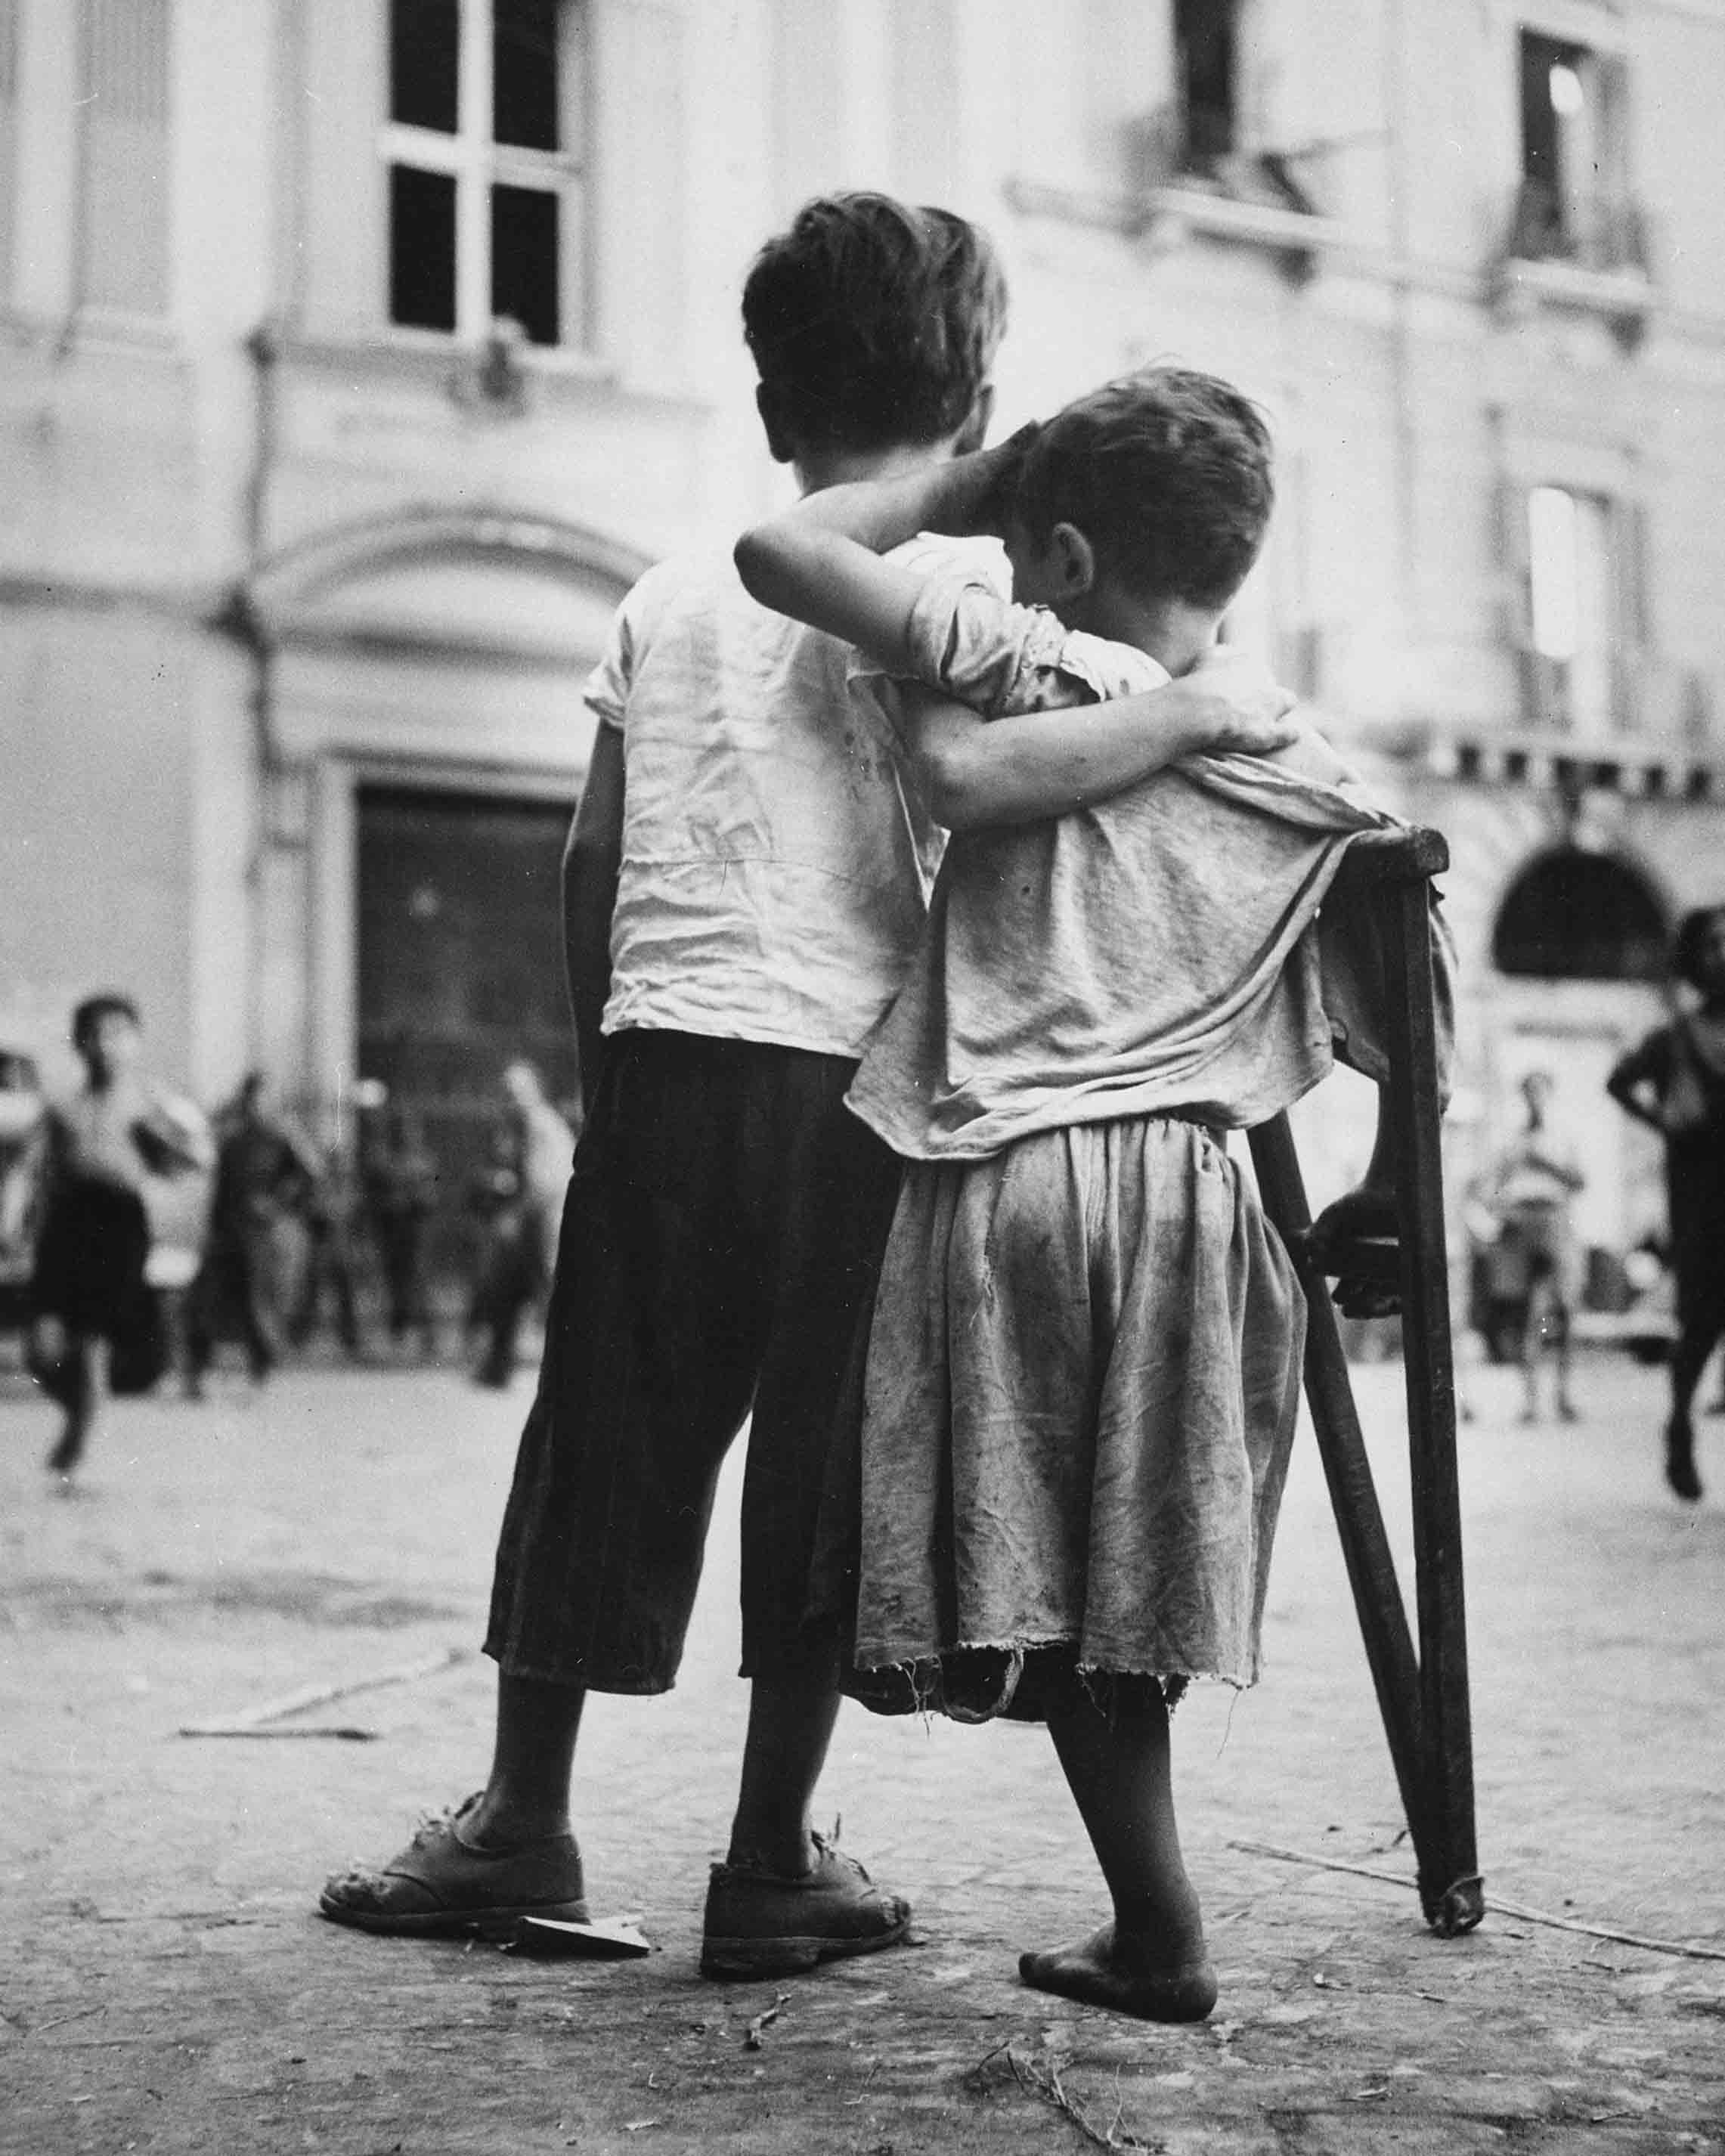 Bambini a Napoli, Italia. Un ragazzino aiuta il compagno con una gamba sola ad attraversare la strada, agosto 1944 Napoli, Italia. Autore sconosciuto o non fornito © courtesy U.S. Navy / U.S. National Archives and Records Administration